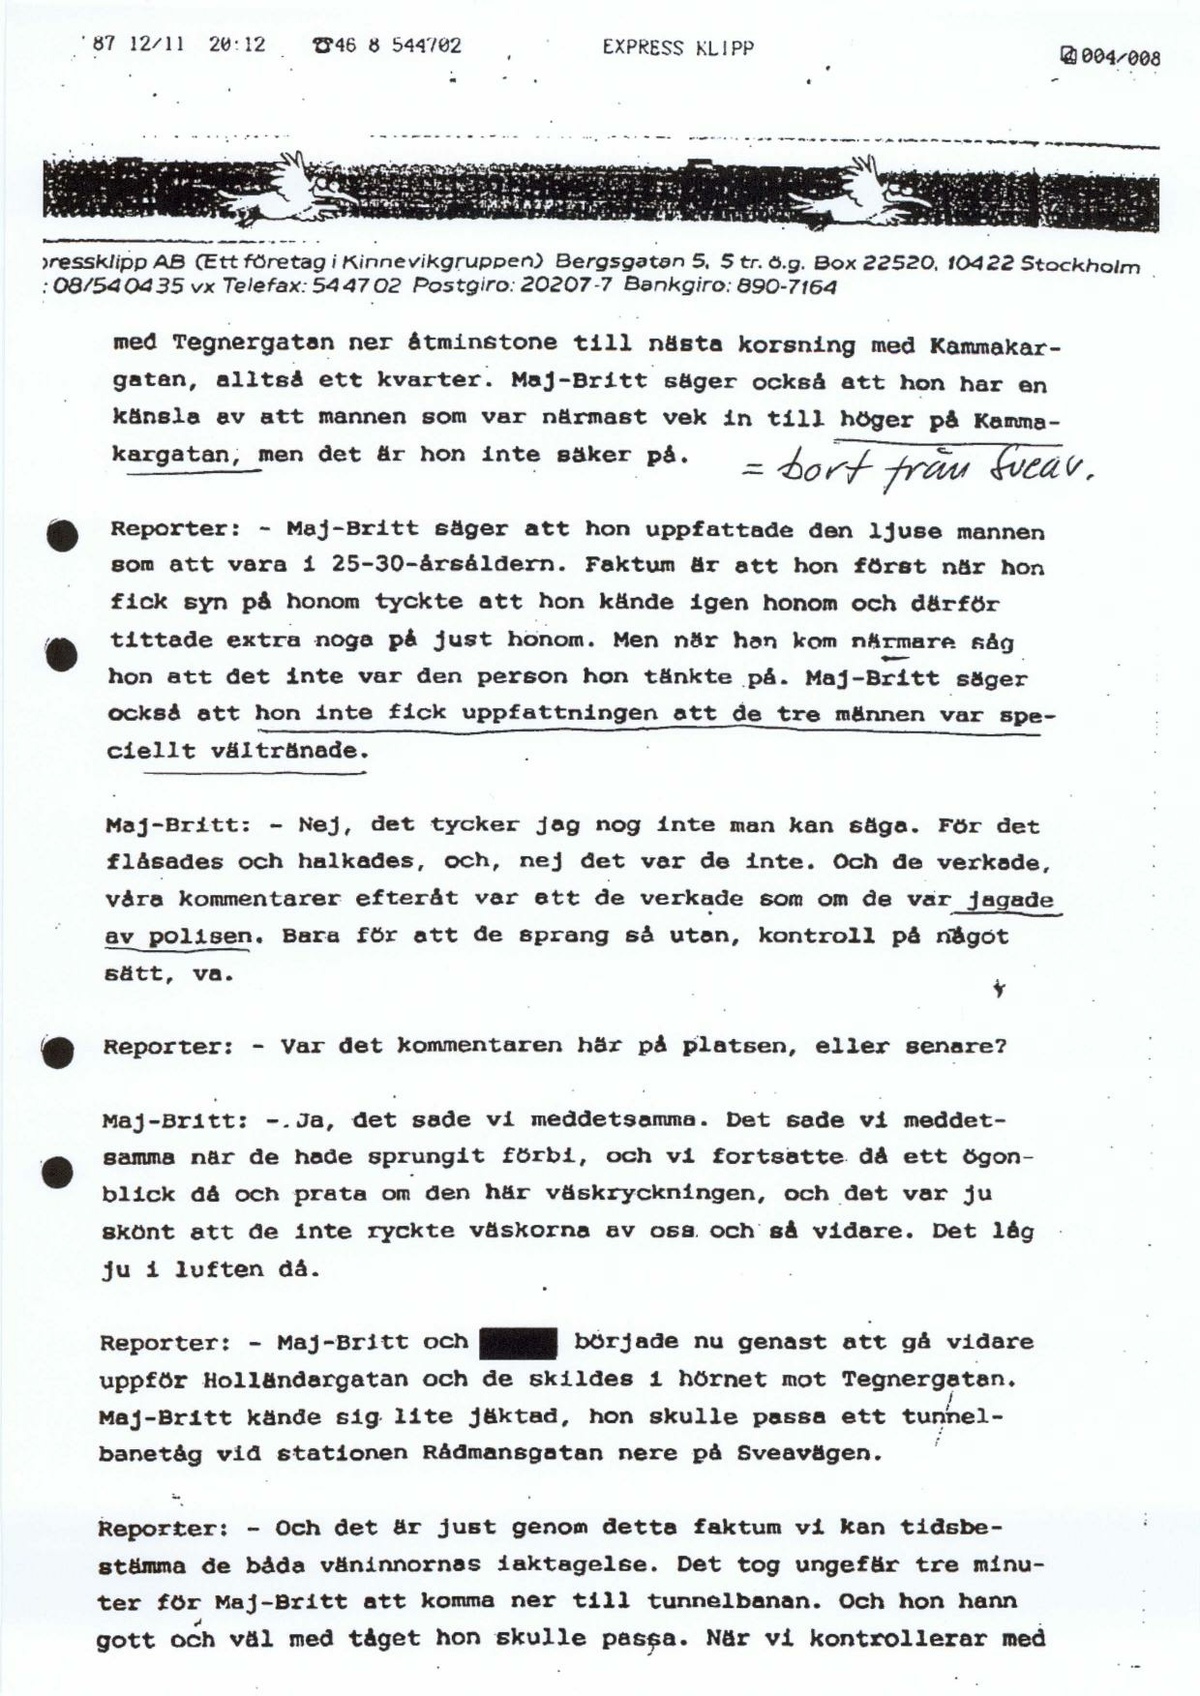 Pol-1987-12-15 EBC7911-00 Transkription av program-i Kanalen P1 1987-12-09 om tre springande män på Holländargatan mordkvällen.pdf